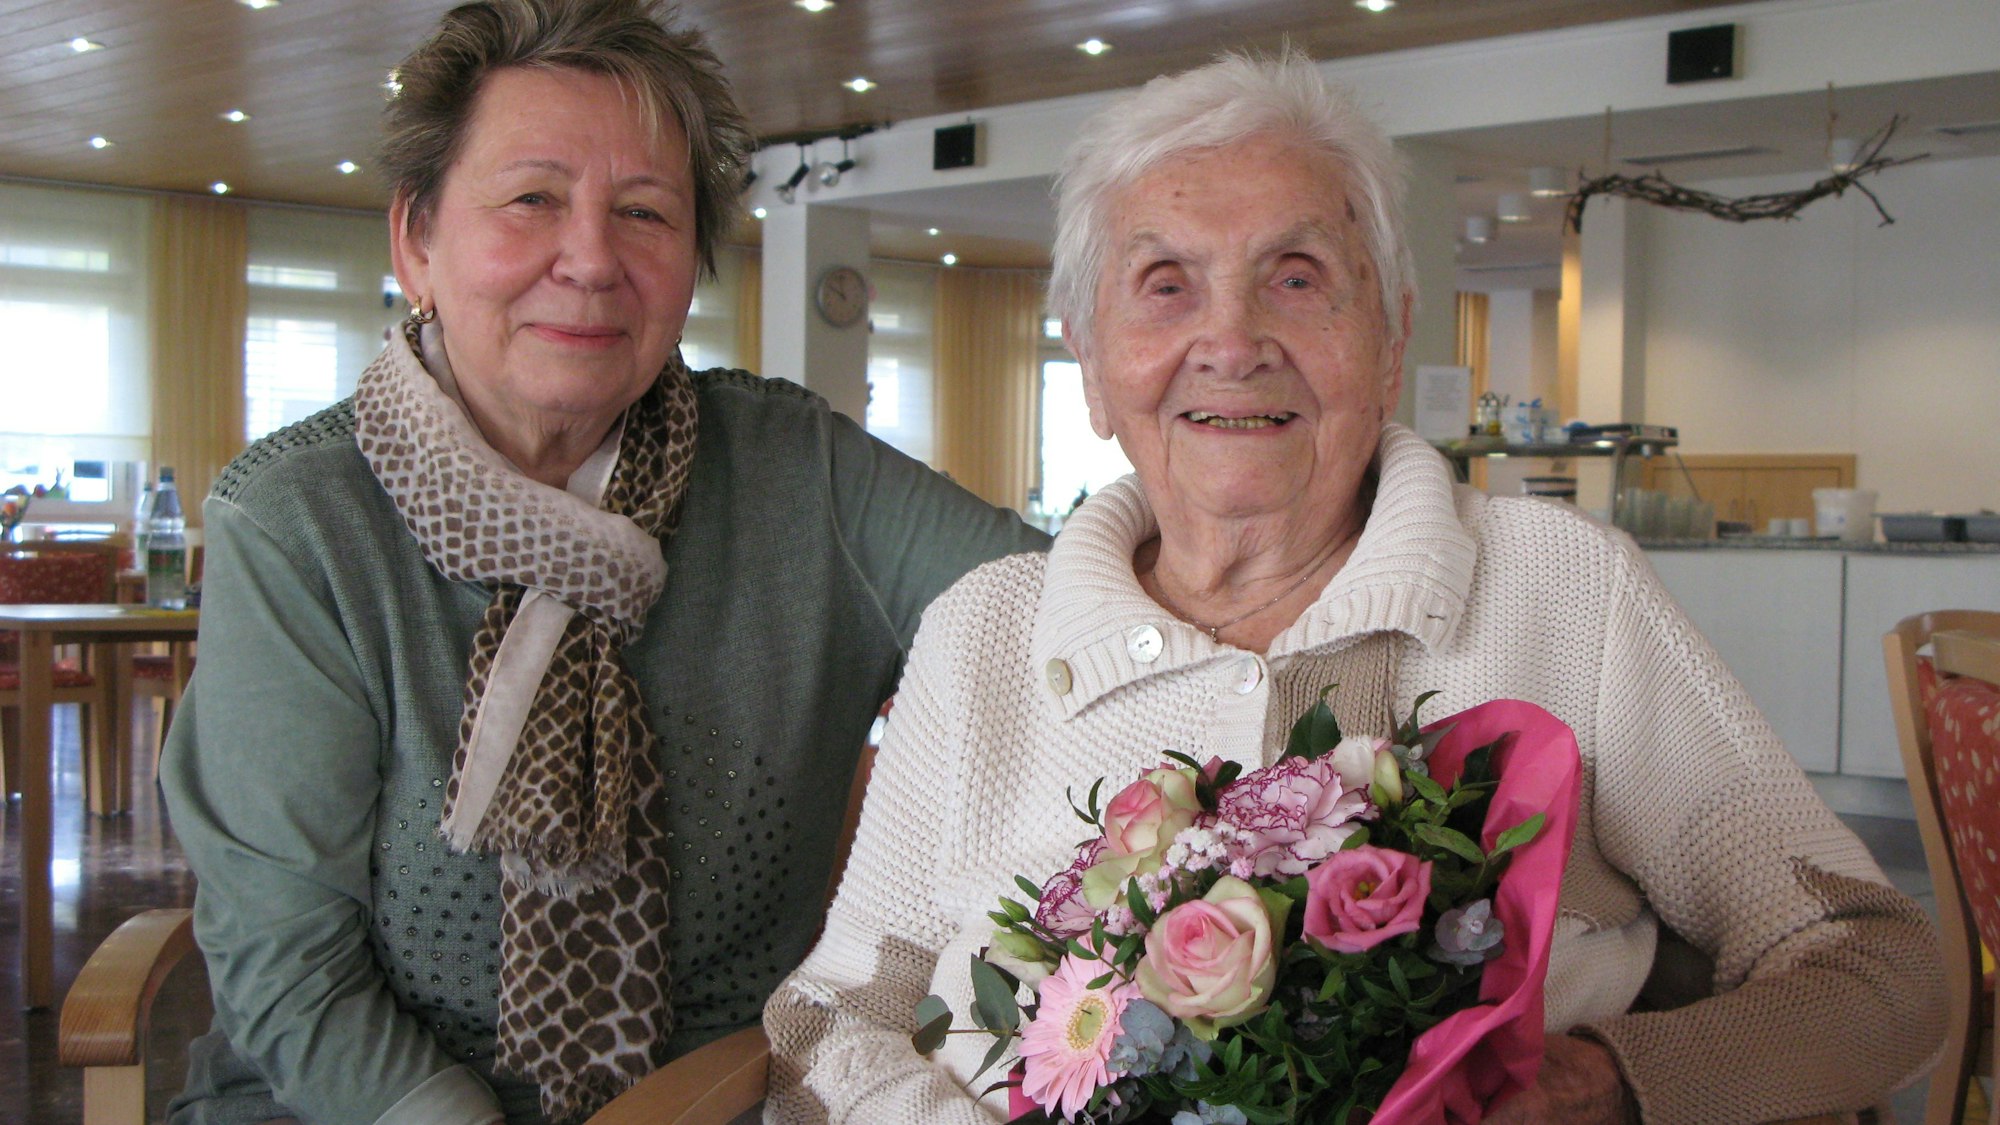 Die 102 Jahre alte Charlotte Seeger sitzt mit einem Blumenstrauß in den Händen neben ihrer 74-jährigen Tochter.